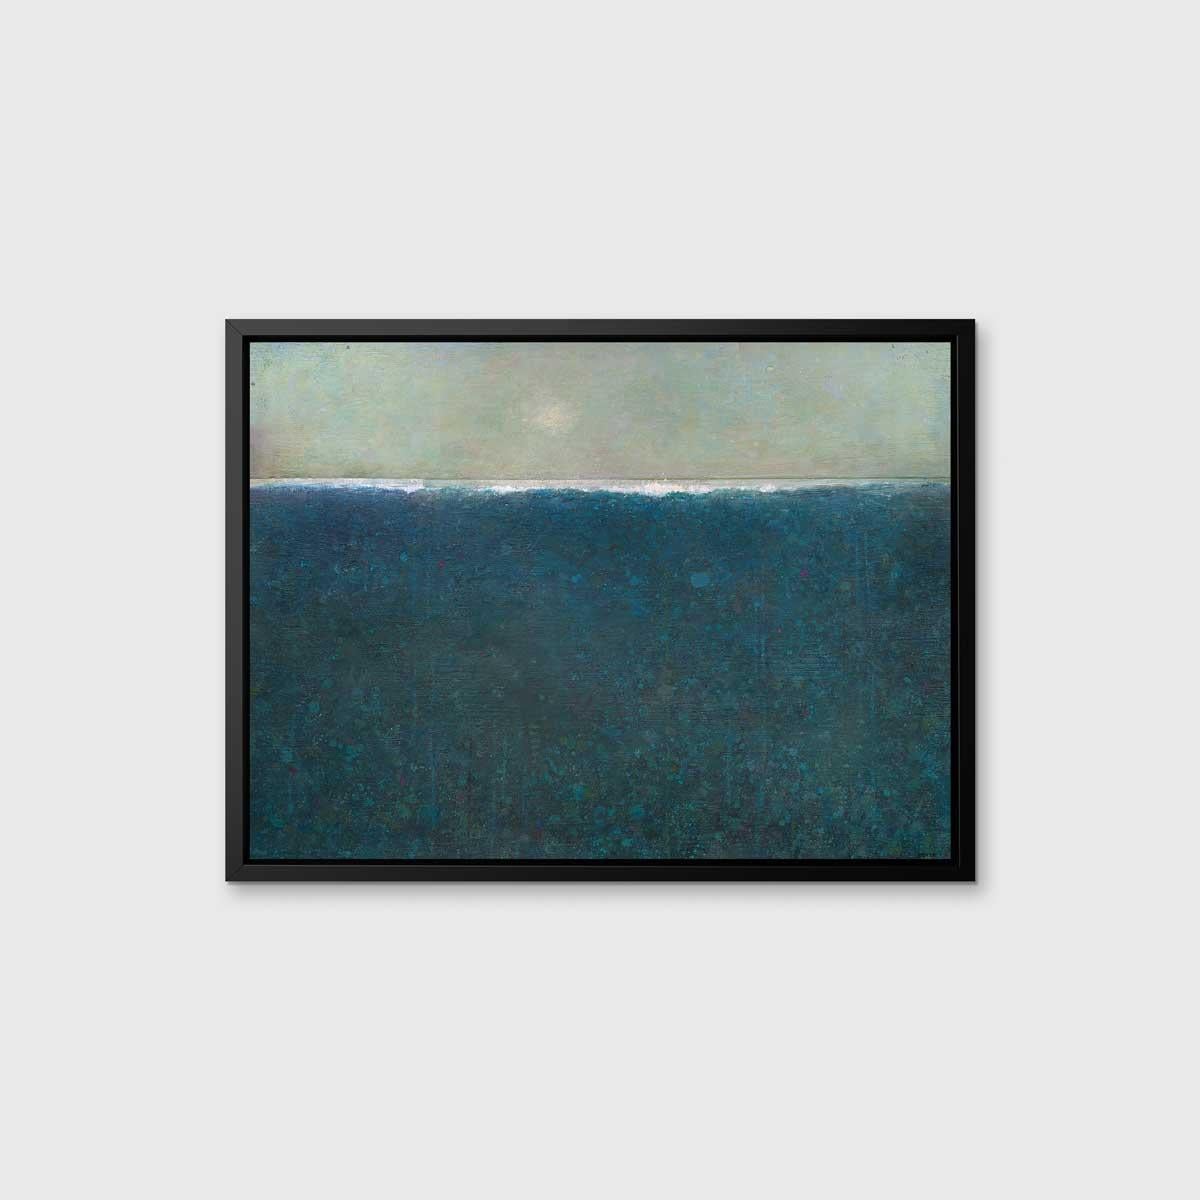 Ce paysage abstrait imprimé en édition limitée par Elwood Howell présente la ligne d'horizon haute en blanc, signature de l'artiste. Sous la ligne se trouve un bleu profond texturé, composé de petites formes et de couches. Au-dessus de l'horizon se